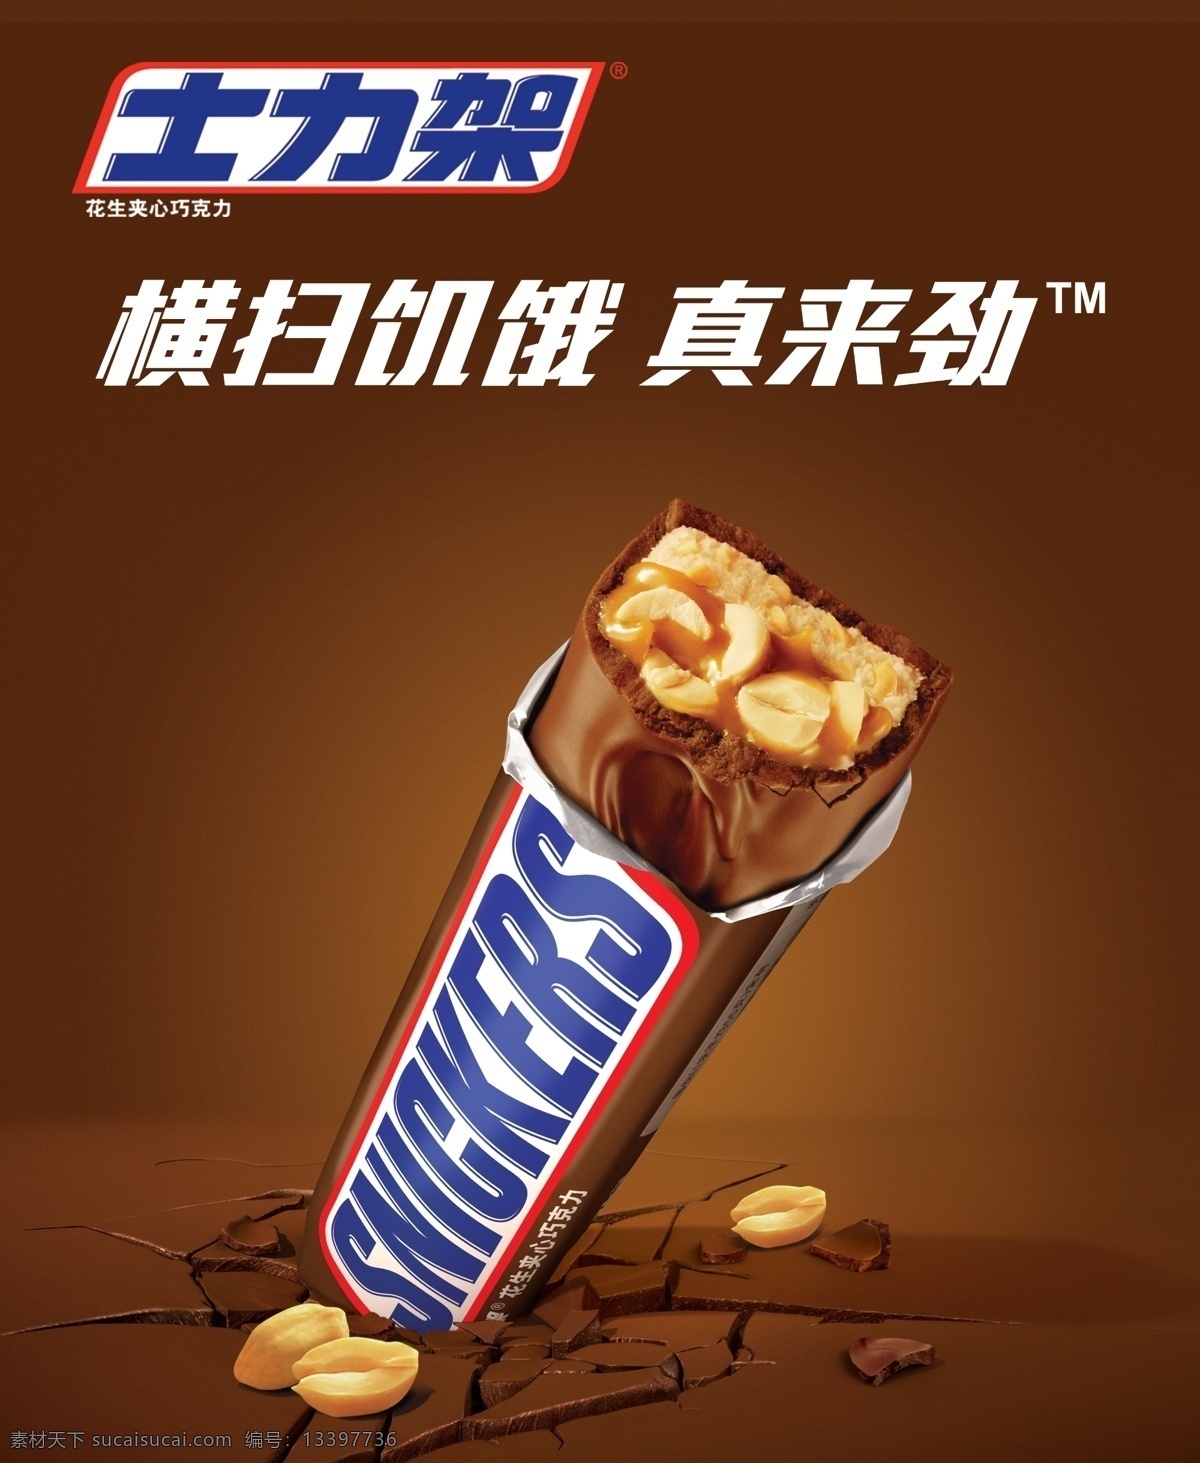 士力架 巧克力 花生 酱色 地裂 美食 零食 广告设计模板 源文件